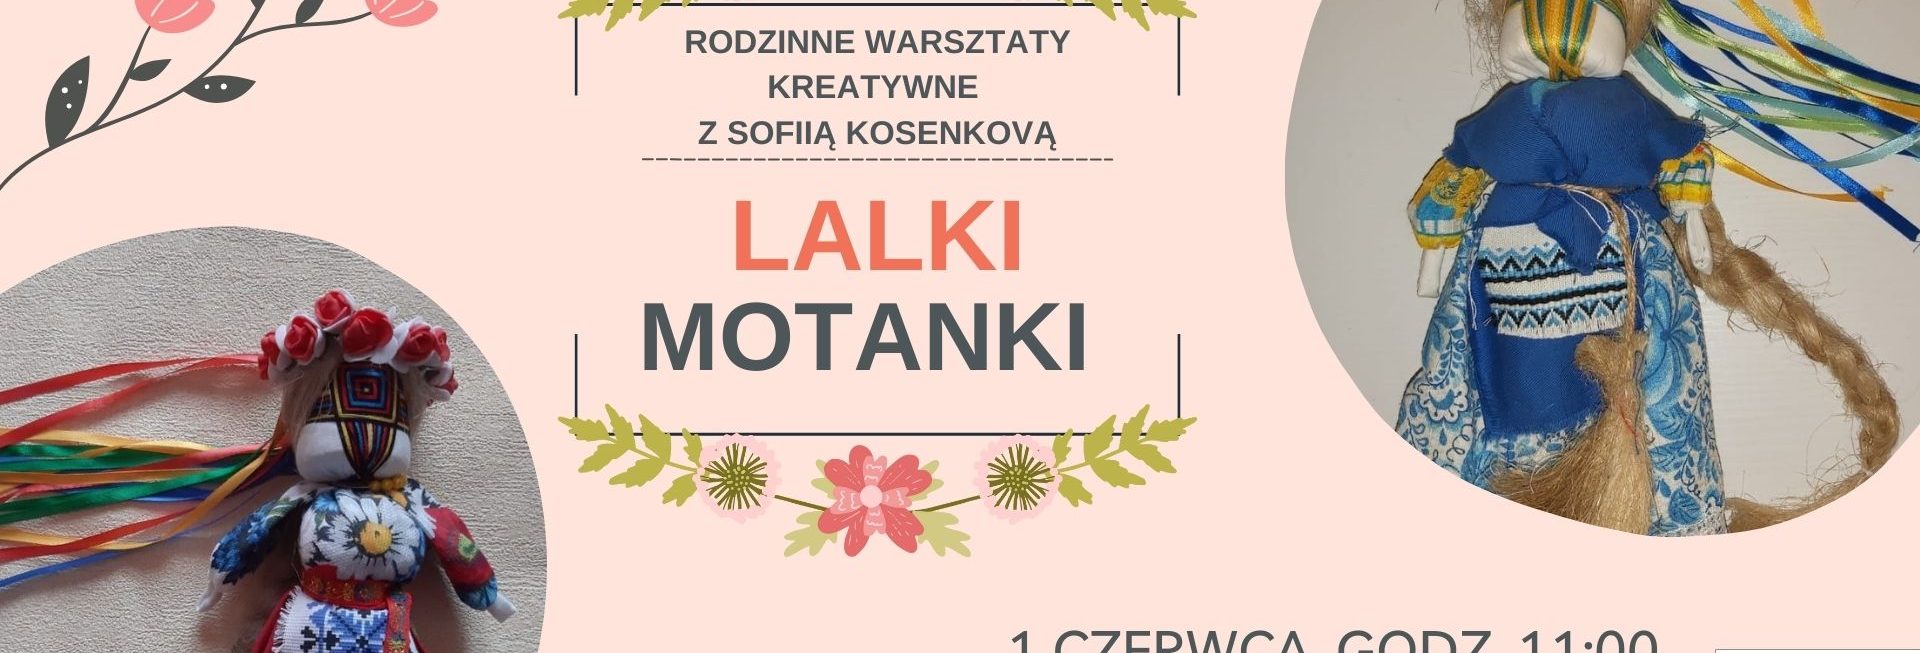 Plakat zapraszający w sobotę 1 czerwca 2024 r. do Olsztyna na międzykulturowe warsztaty rodzinne - Lalki Motanki Olsztyn 2024. 